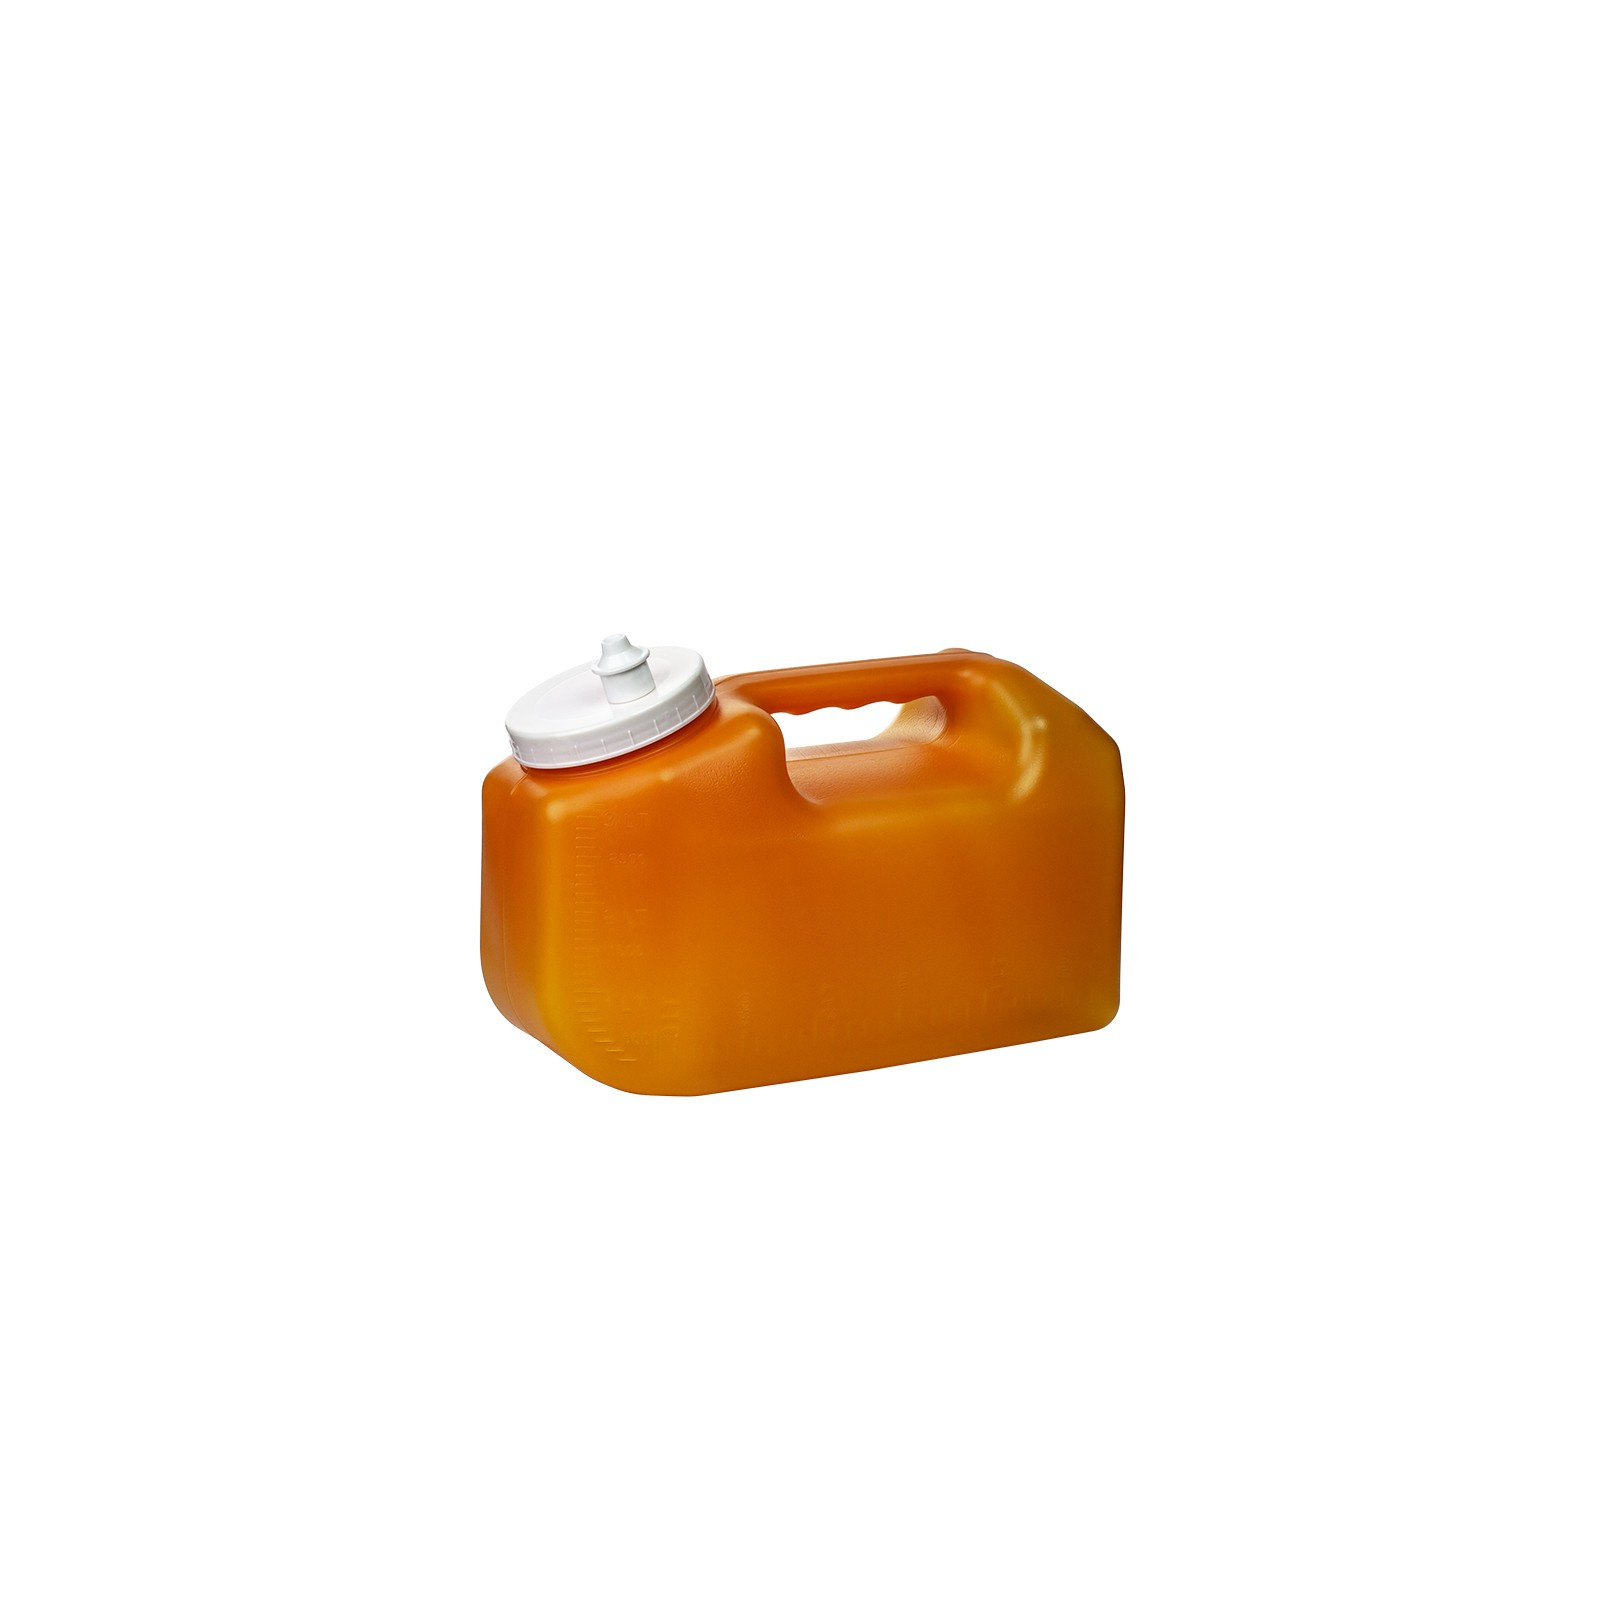 B350ECO - Récipient de collecte d'urine EcoTainer 24™ - Simport